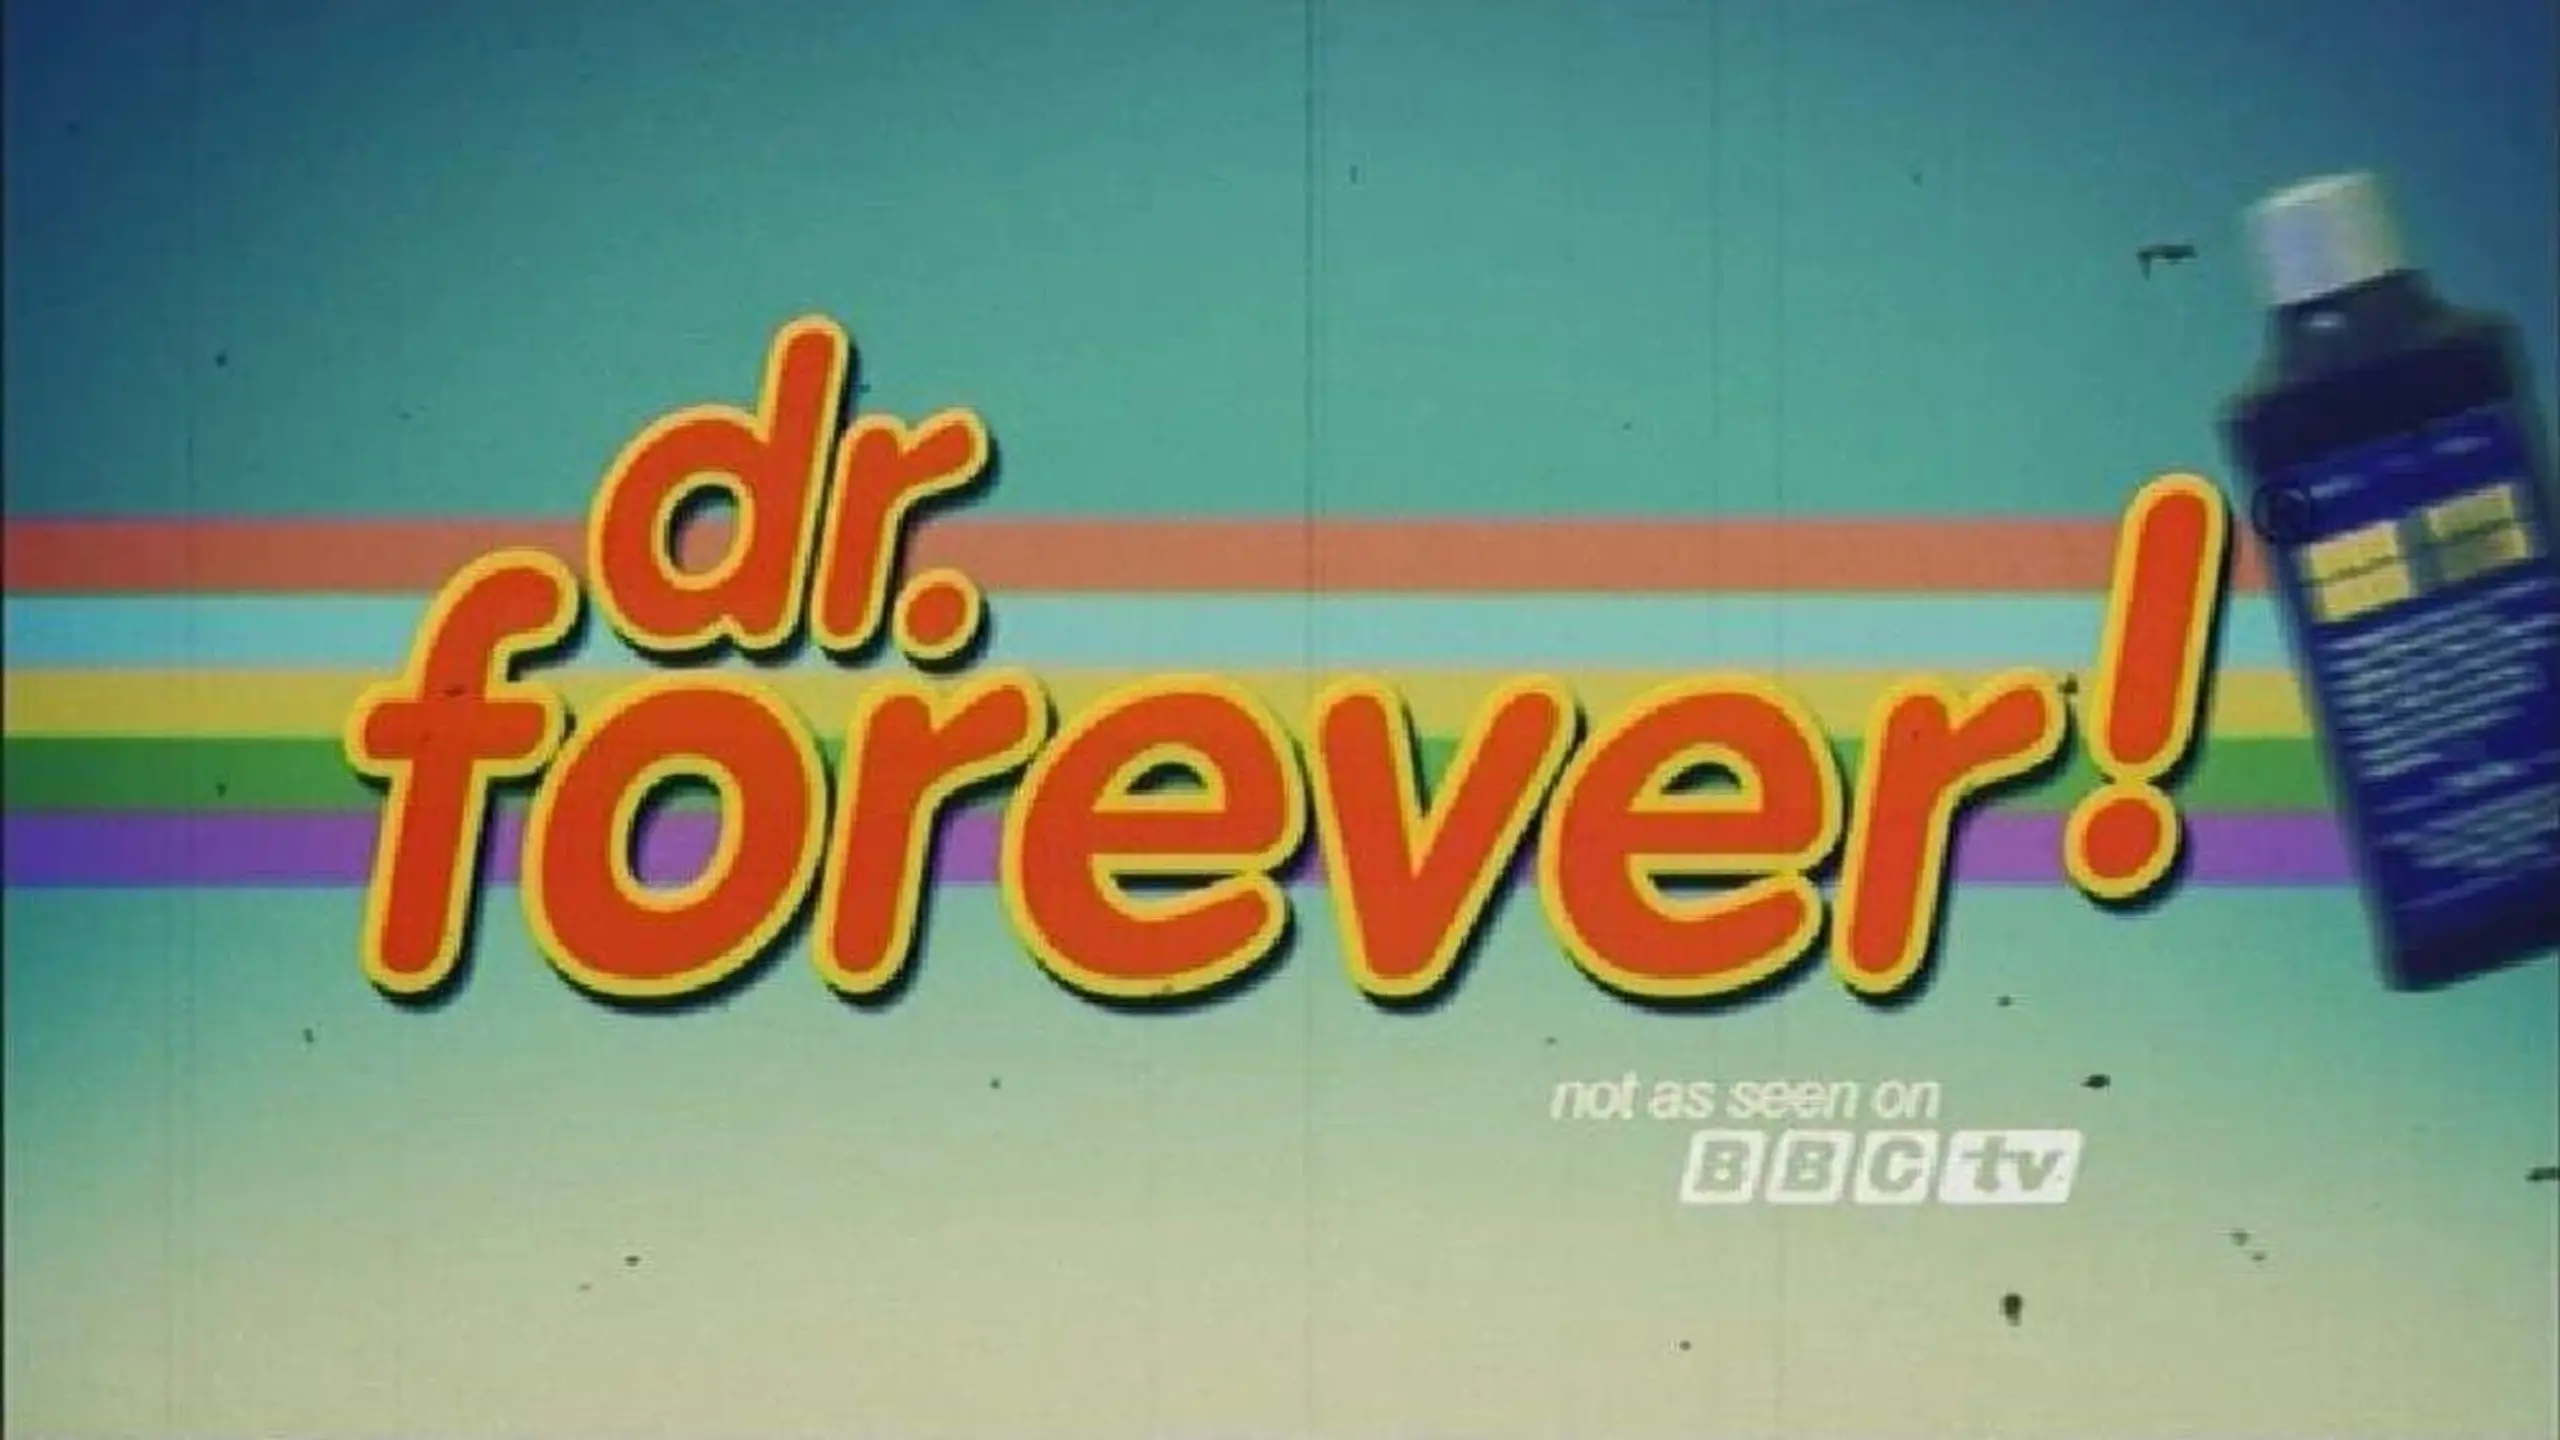 Dr. Forever!